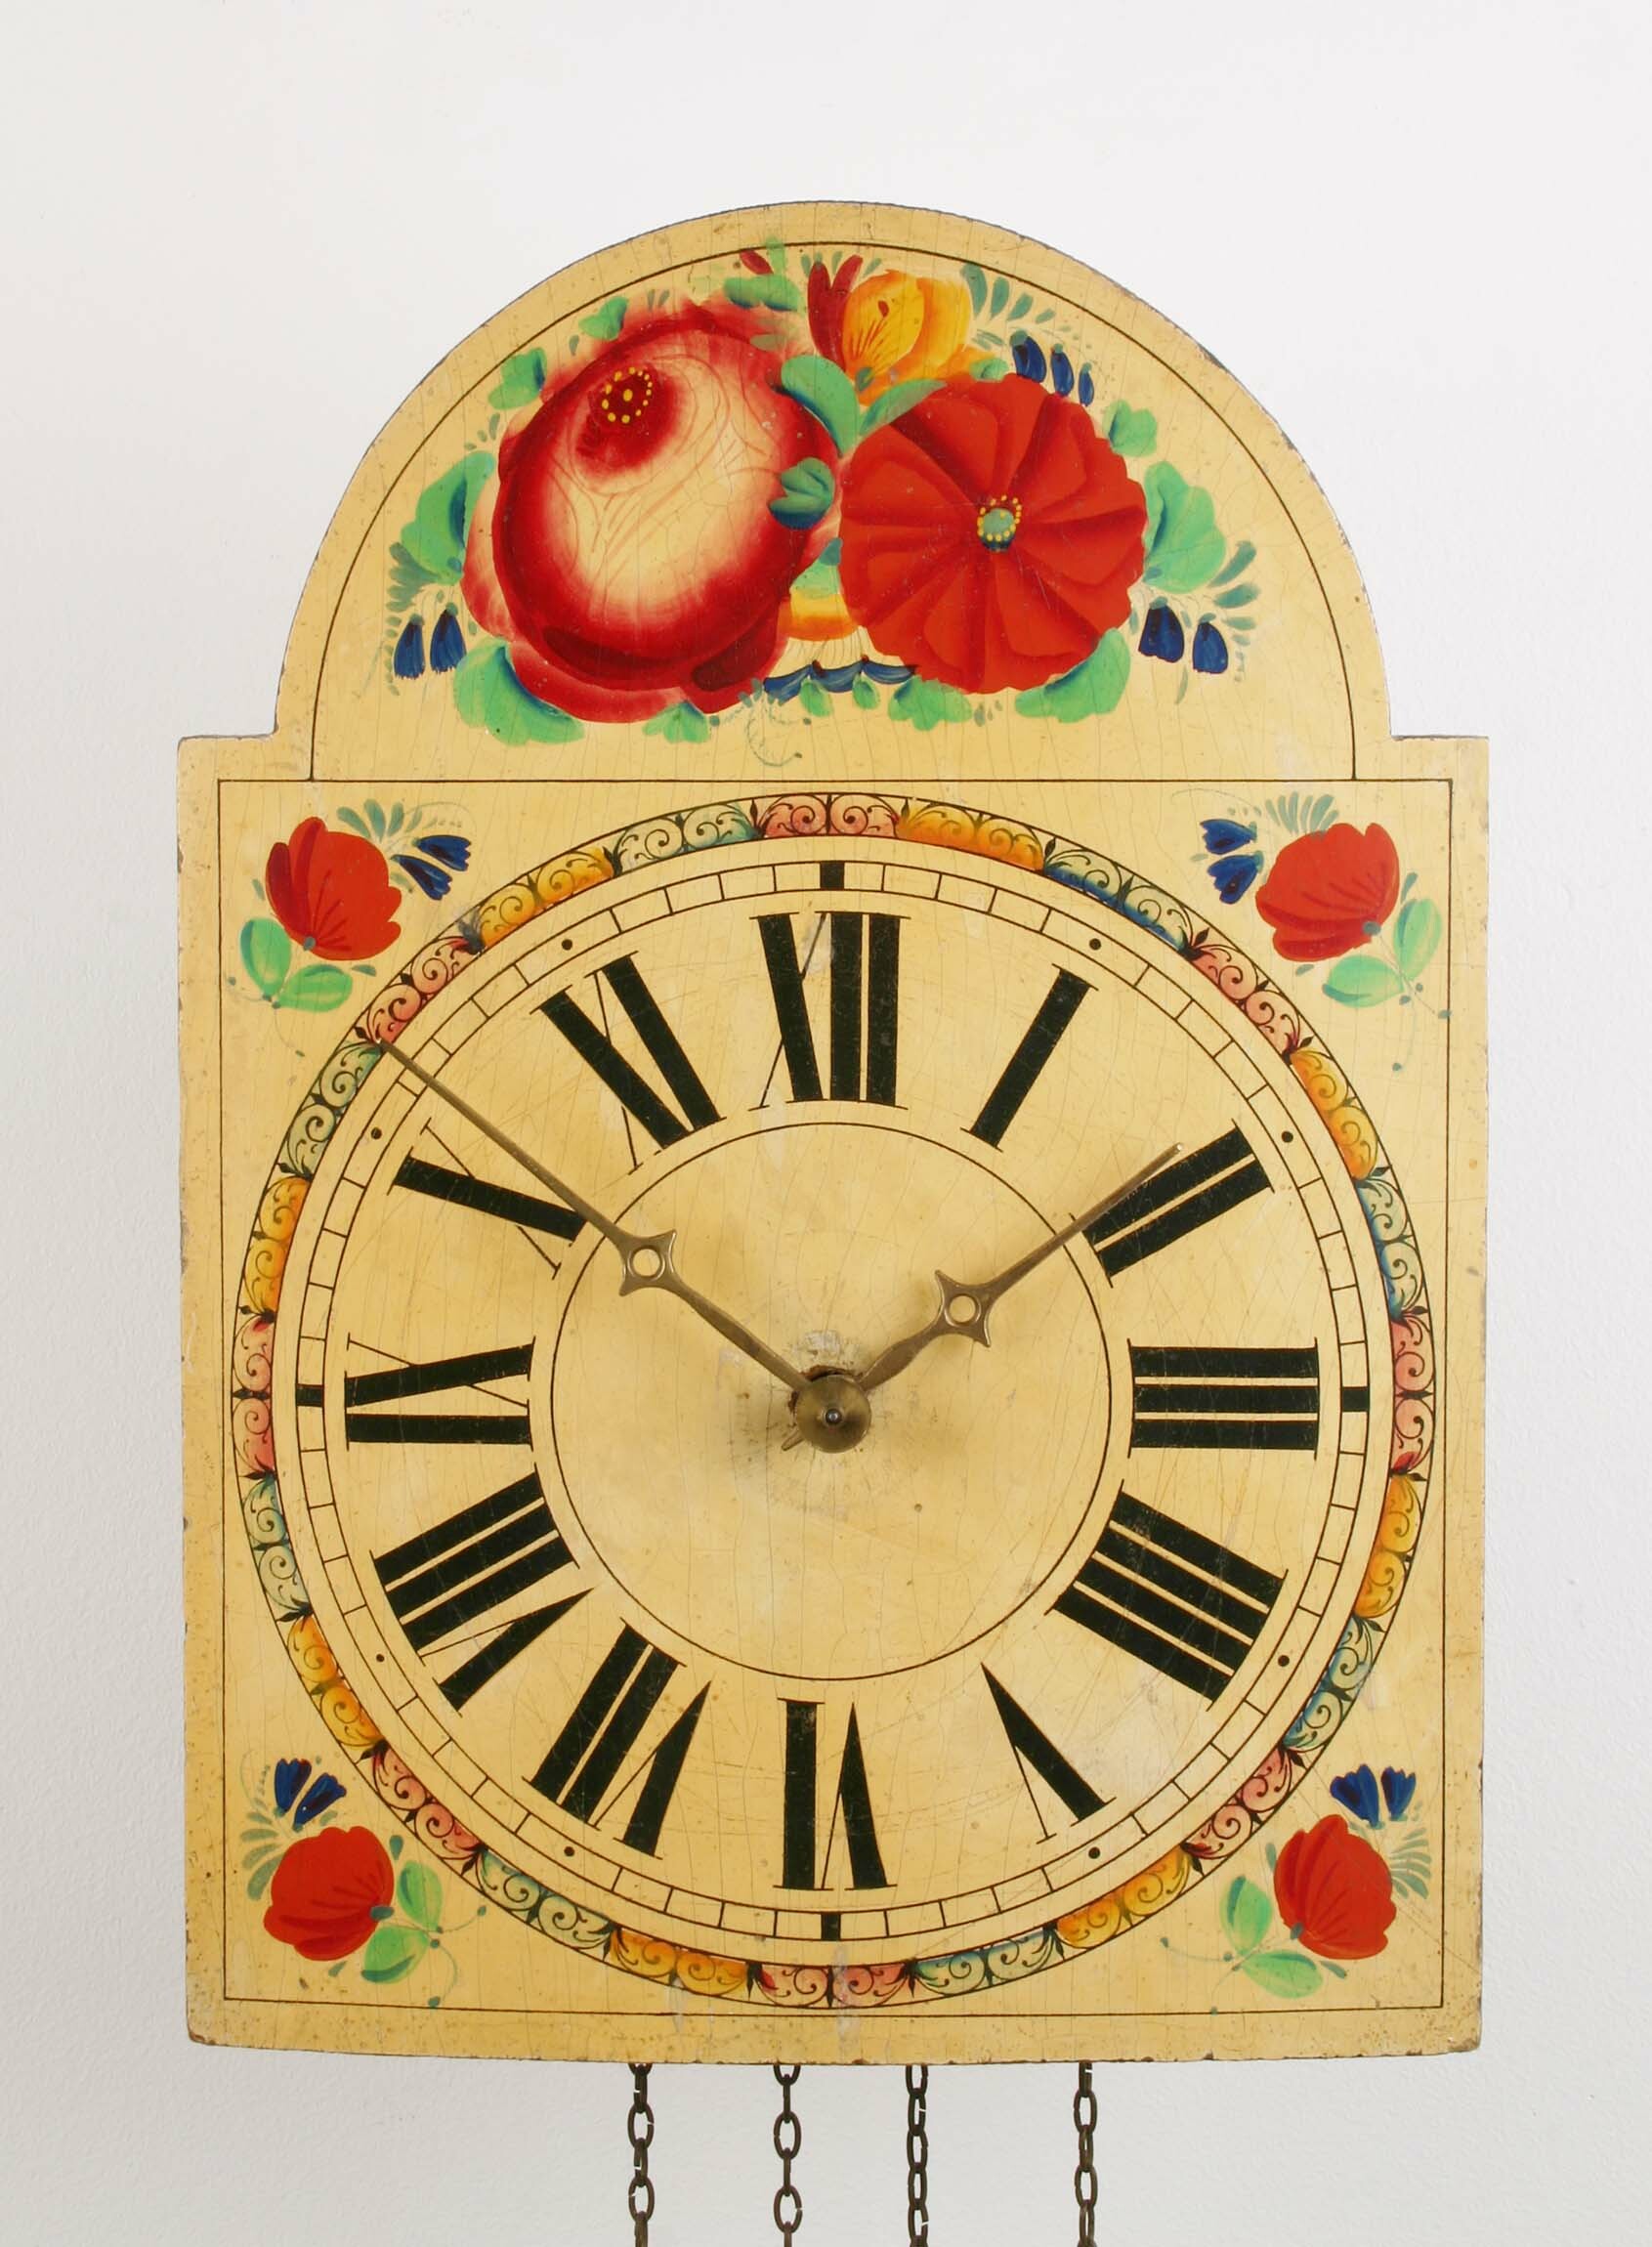 Lackschilduhr, Andreas Maier, St. Georgen, um 1880 (Deutsches Uhrenmuseum CC BY-SA)